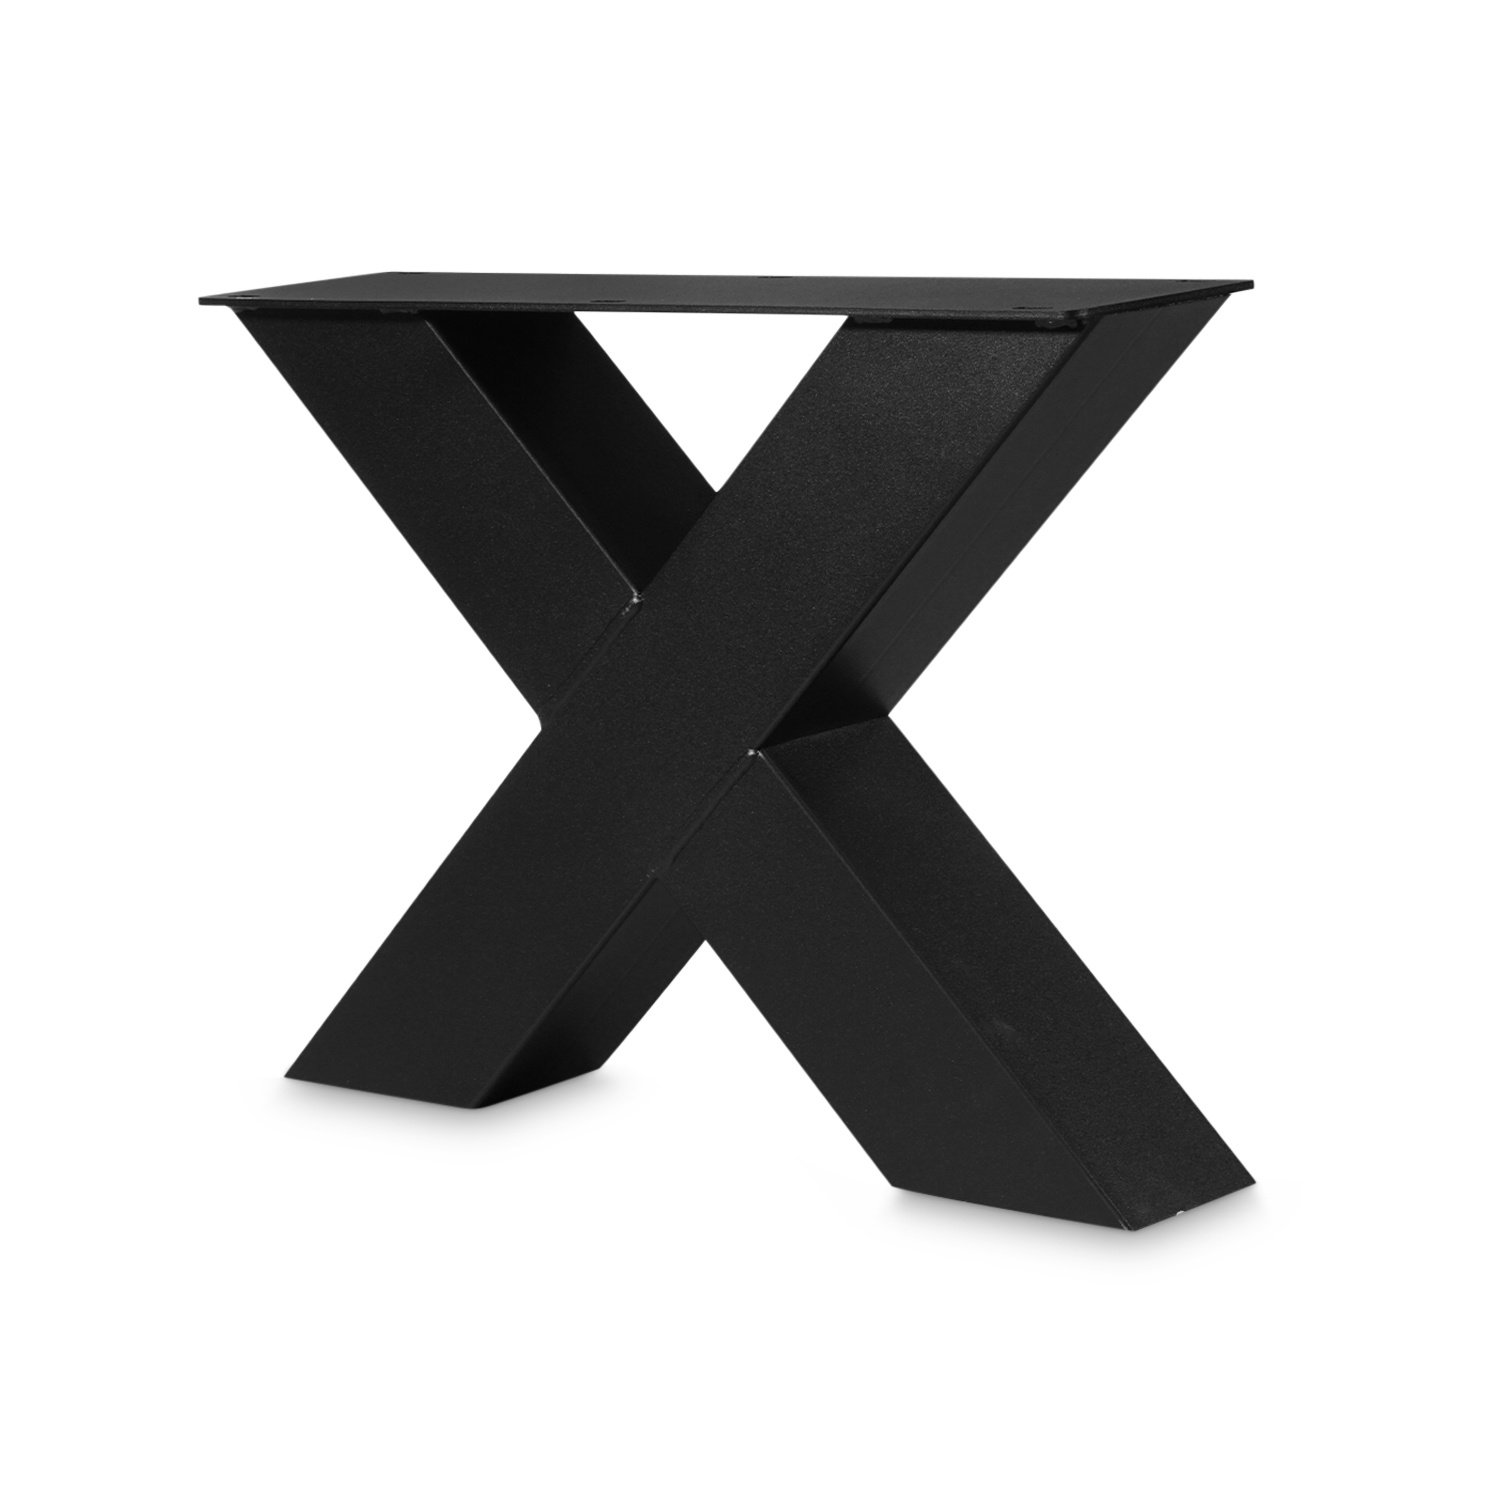  Couchtisch Beine X Metall SET (2 Stück) - 10x10 cm - 56 cm breit - 41 cm hoch - X-Form Tischbeine / Tischkufen Couchtisch - beschichtet - Schwarz